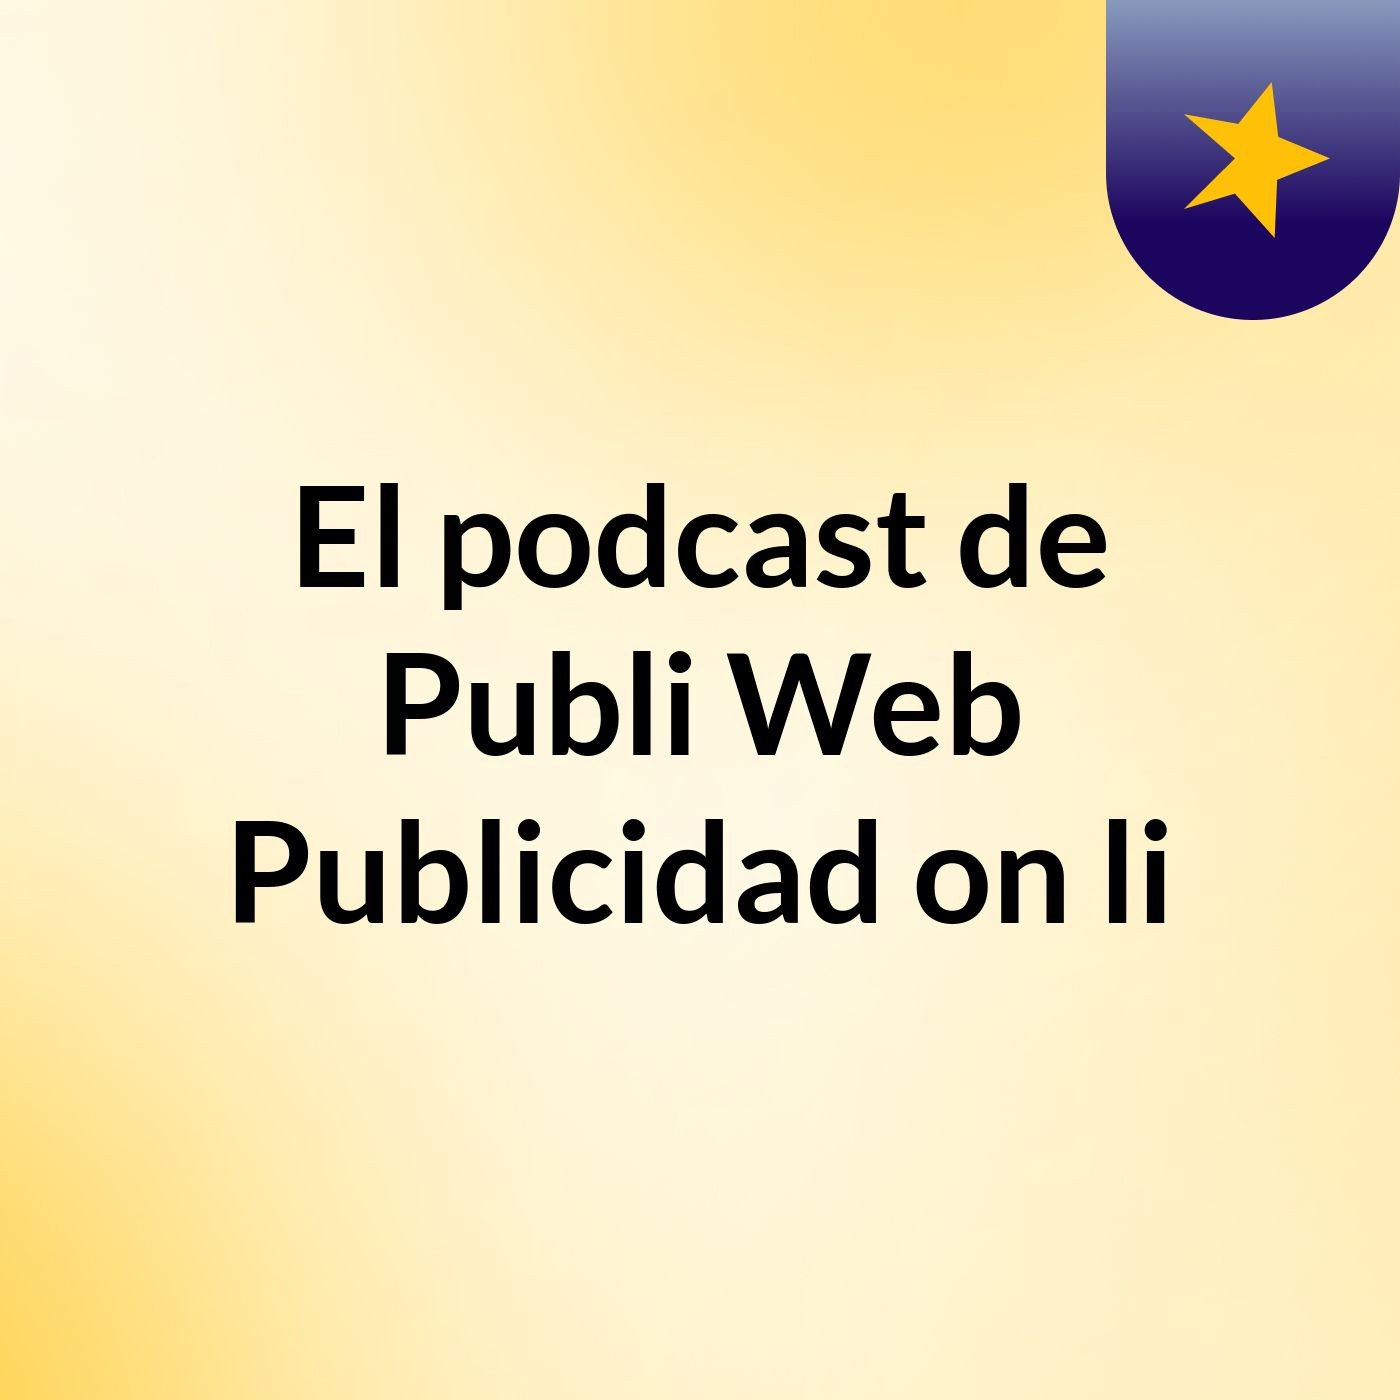 El podcast de Publi Web Publicidad on li